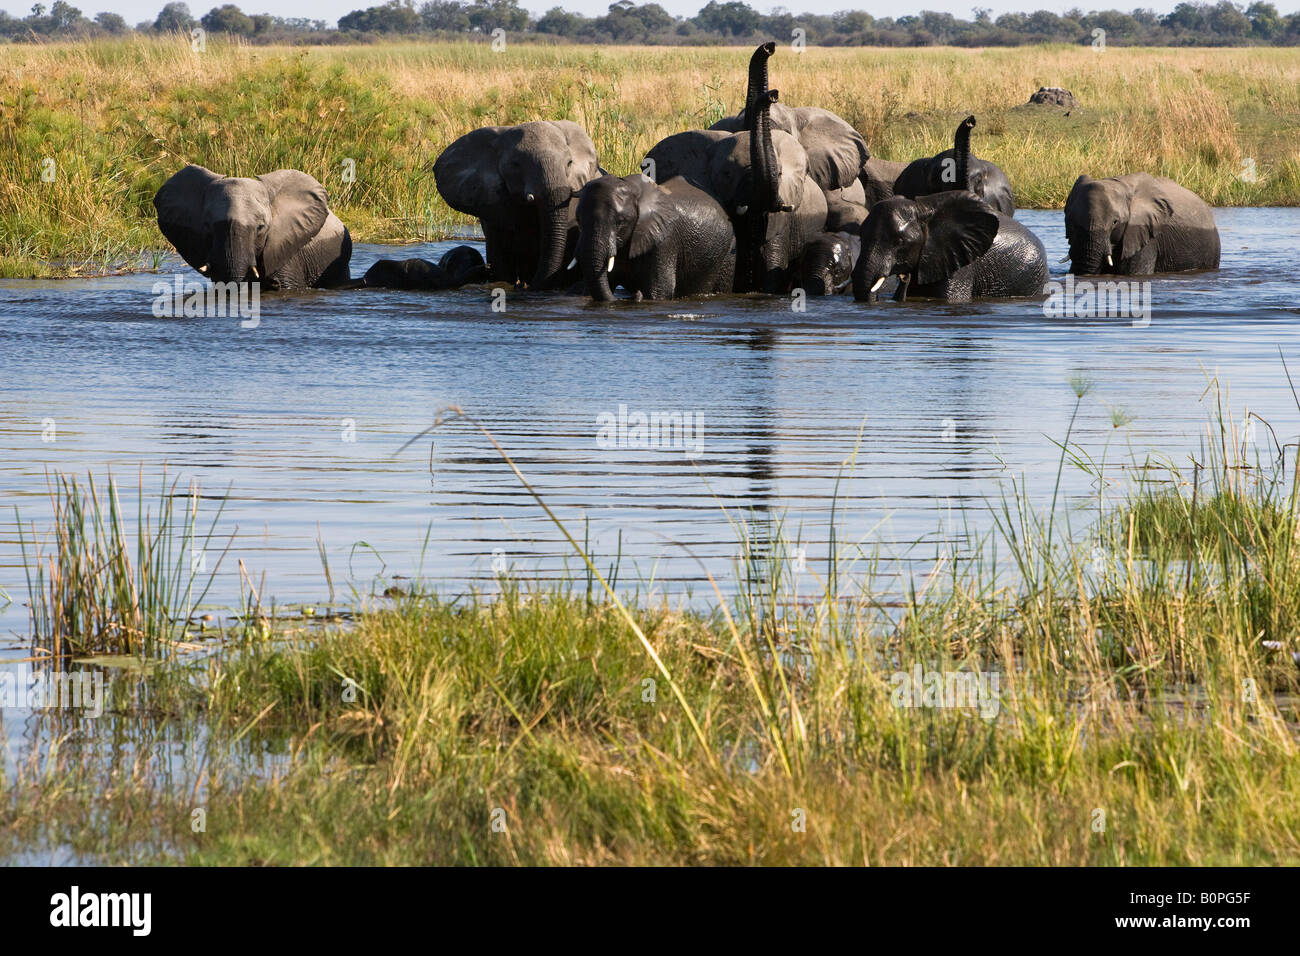 Grande branco di elefanti africani in acqua elefanti Baby nuoto attraverso il fiume trunk adulti sollevato maleodoranti, rivolto verso la parte anteriore consente di visualizzare il contatto visivo, acqua blu Foto Stock